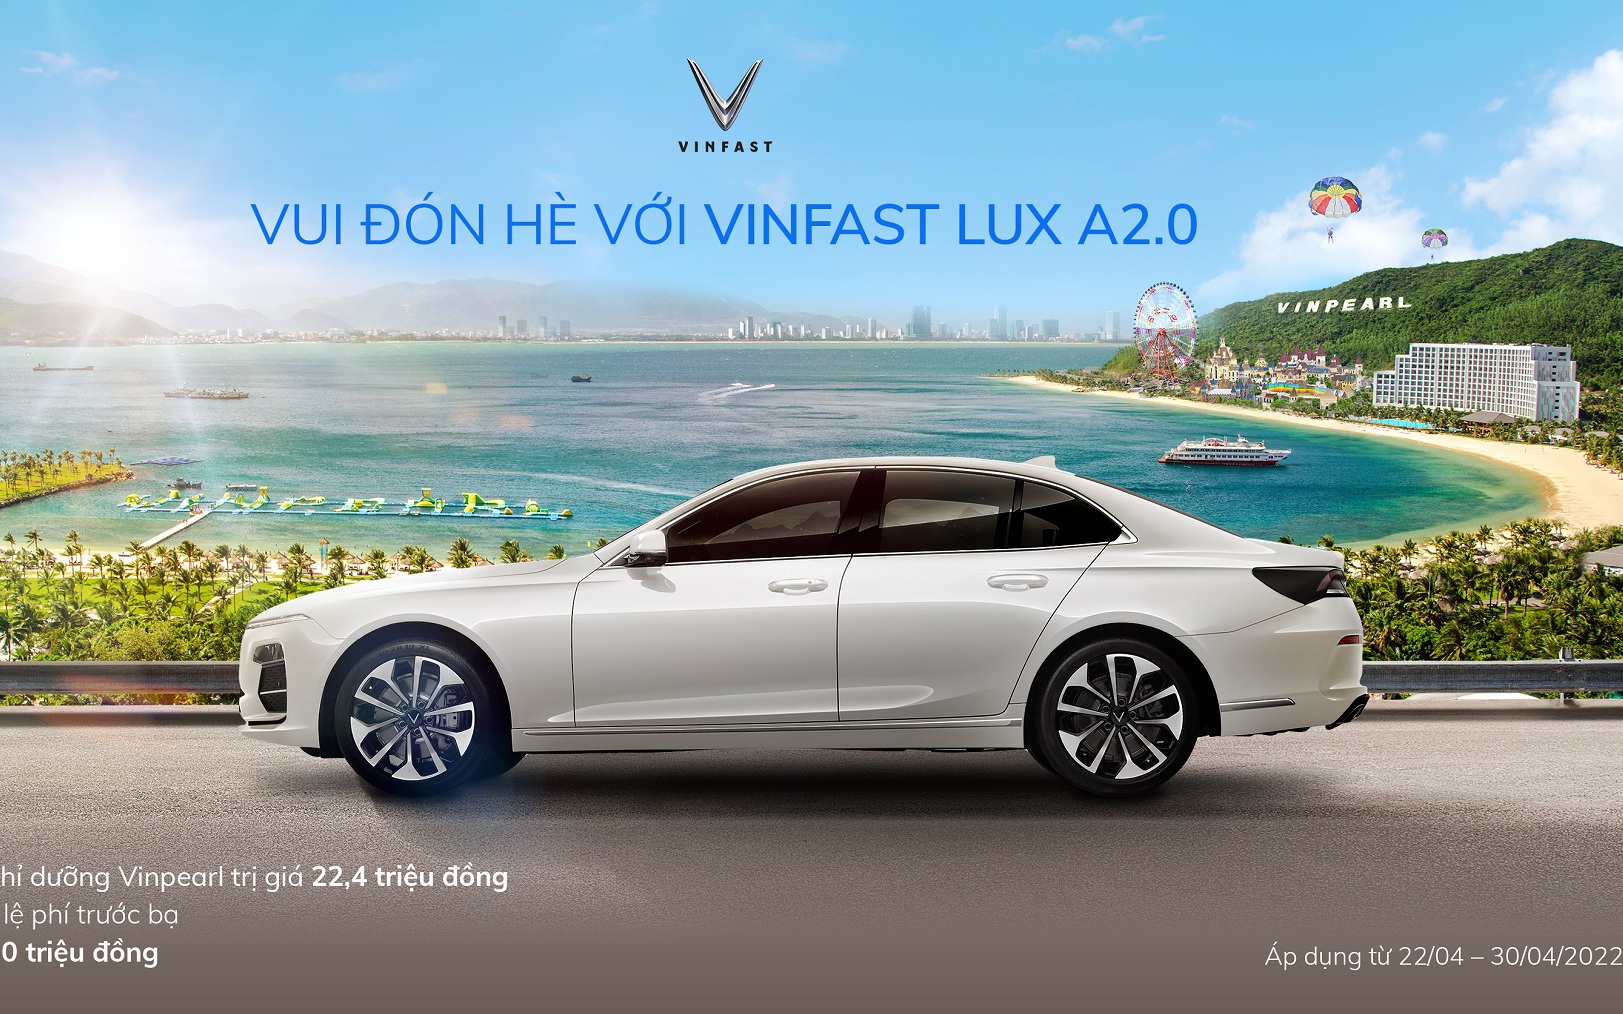 Nghỉ dưỡng Vinpearl miễn phí khi mua VinFast Lux A2.0 trong tháng 4